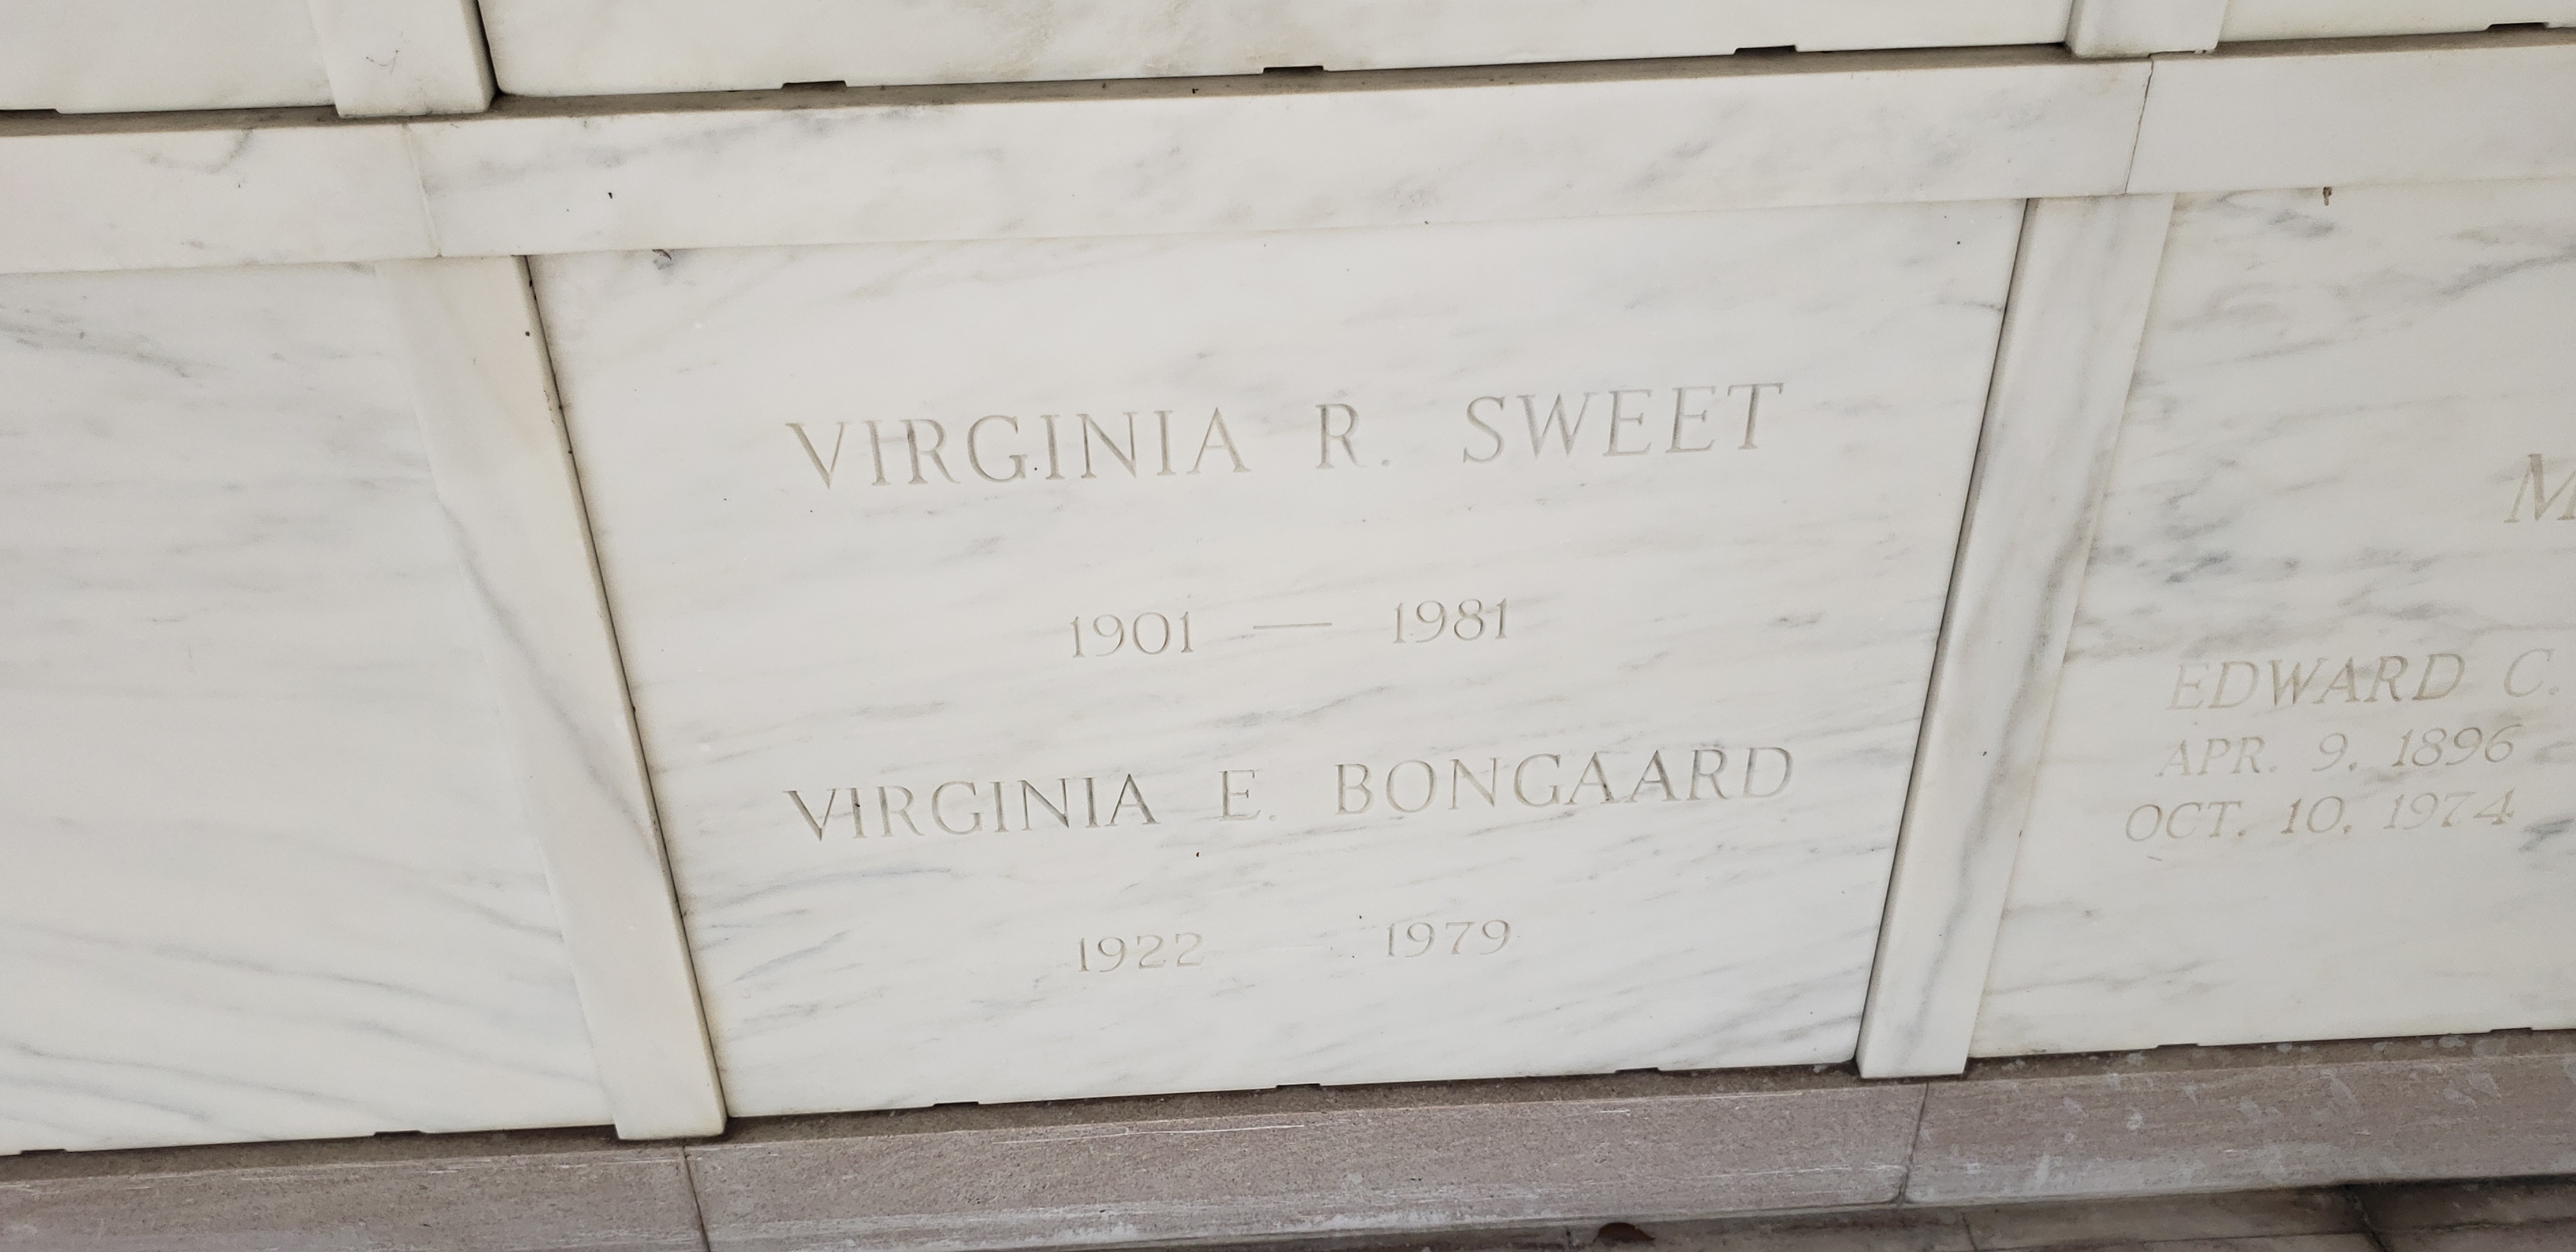 Virginia E Bongaard